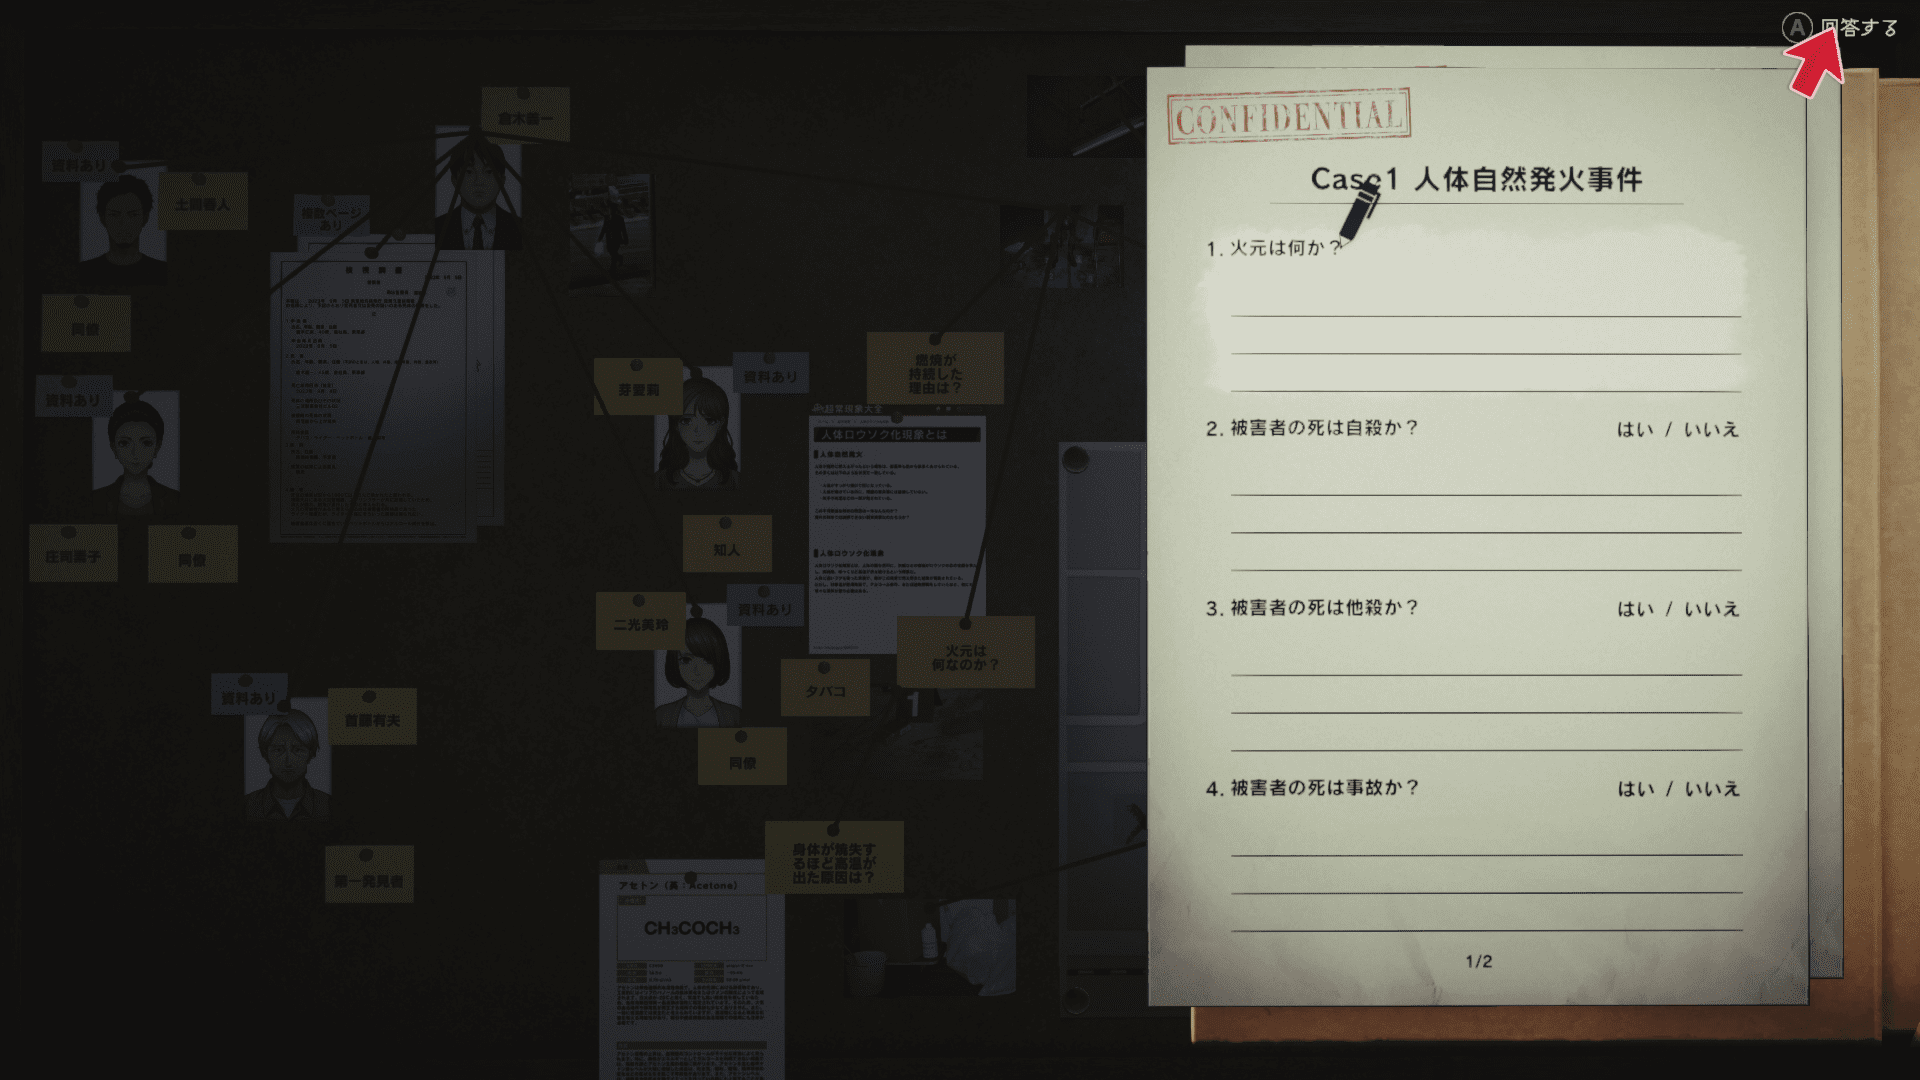 薄暗い部屋でひたすら証拠品を分析して事件の手がかりを集める『東京サイコデミック』が“ガチ”な科学捜査シミュレーションゲームだった_012